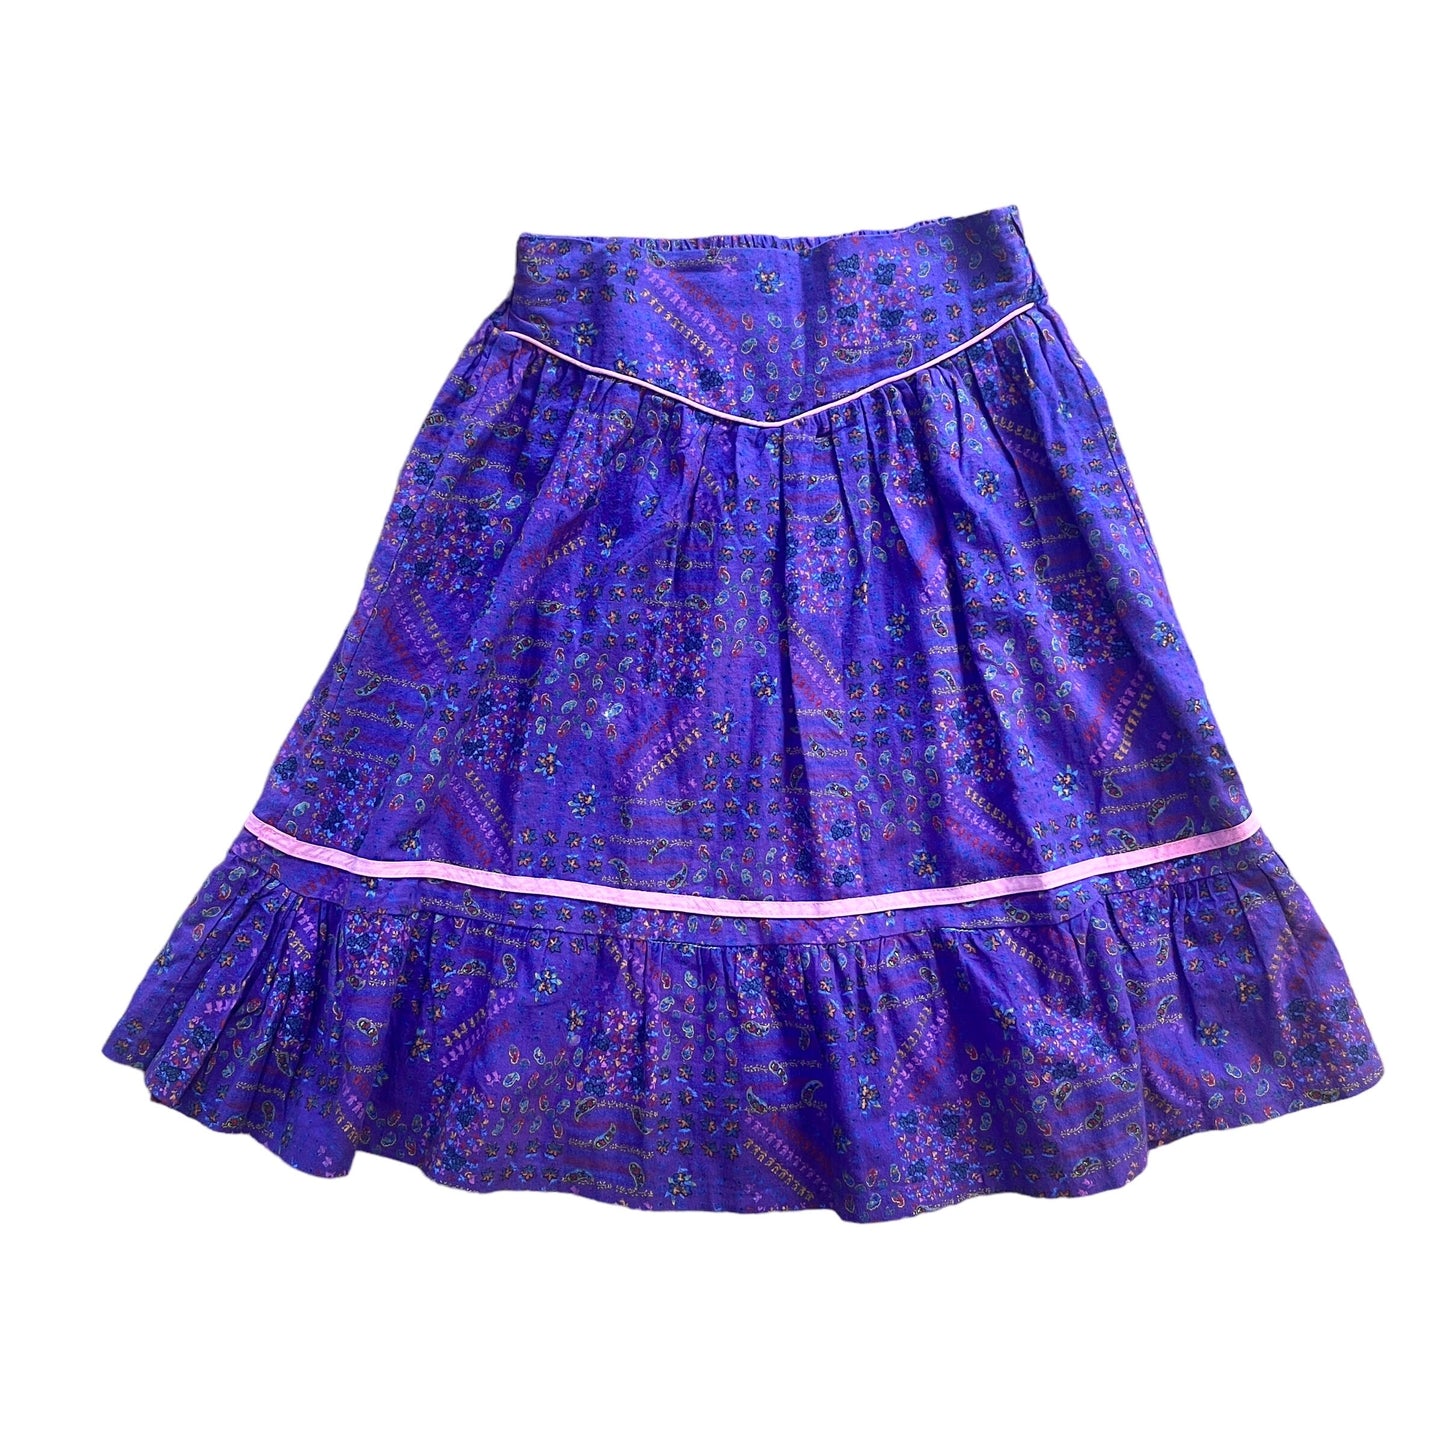 Vintage 1970's Floral Boho Skirt / 10-12Yrs